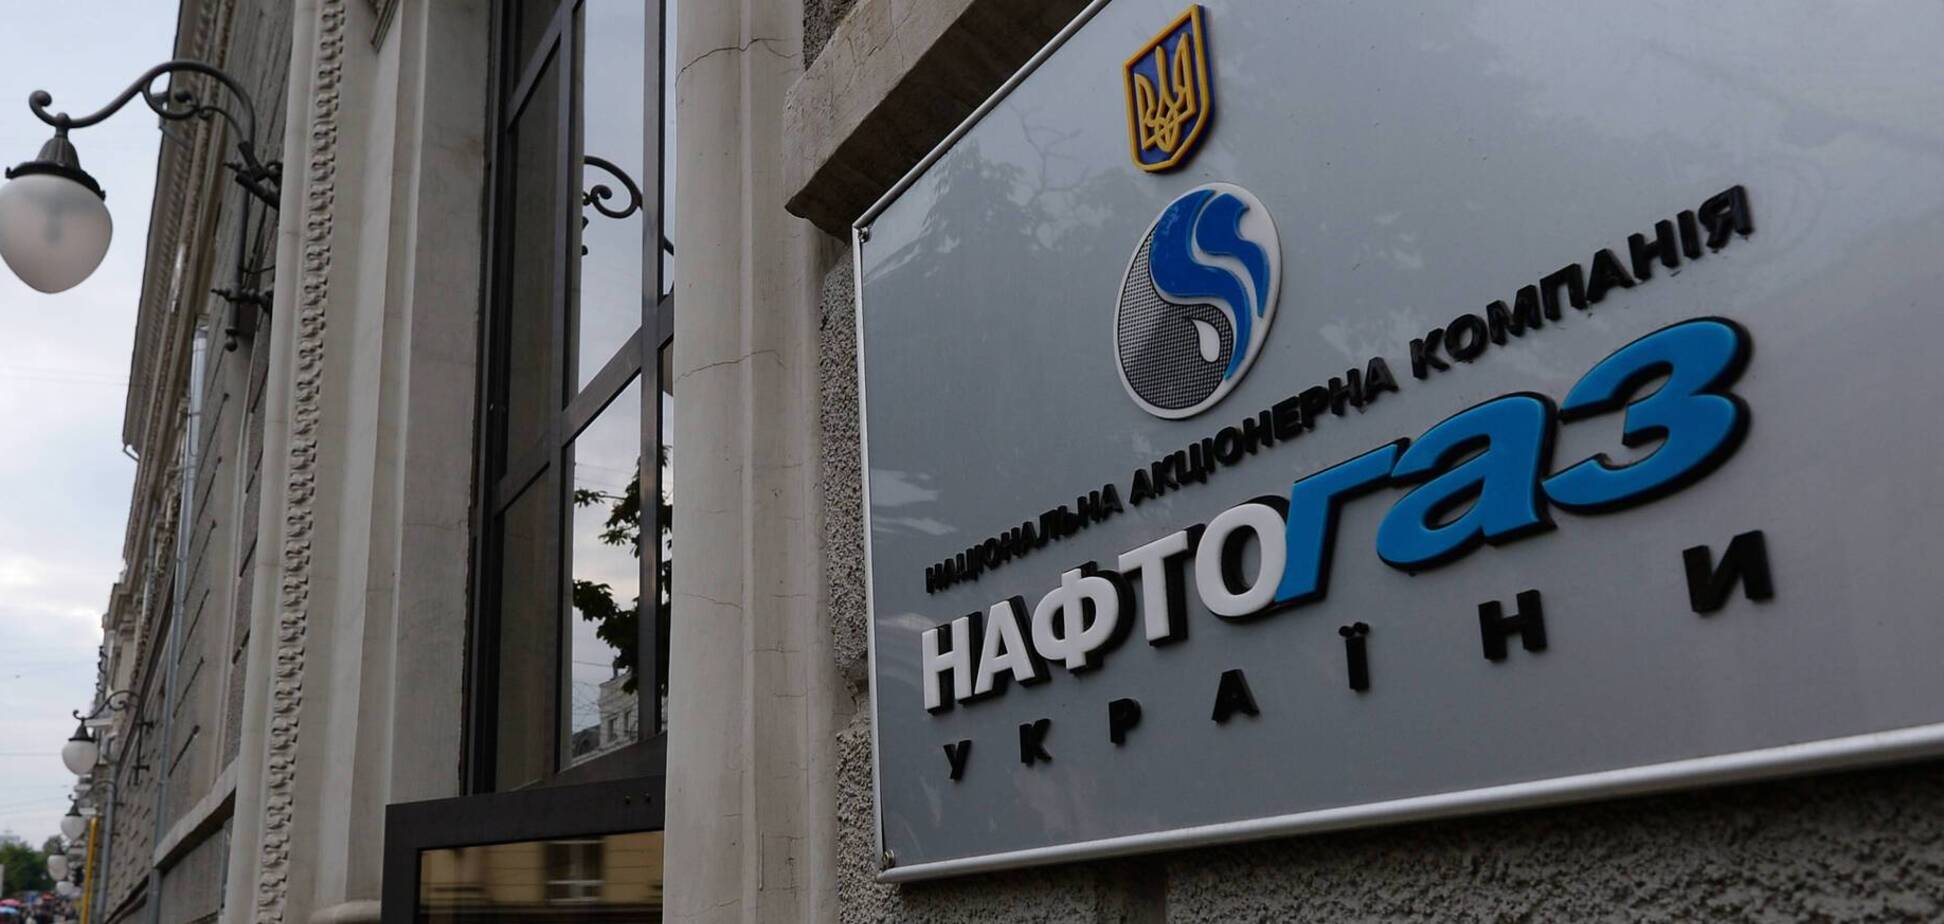 Замовити газ можна через ПриватБанк: Нафтогаз запустив партнерський проєкт із найбільшим банком України